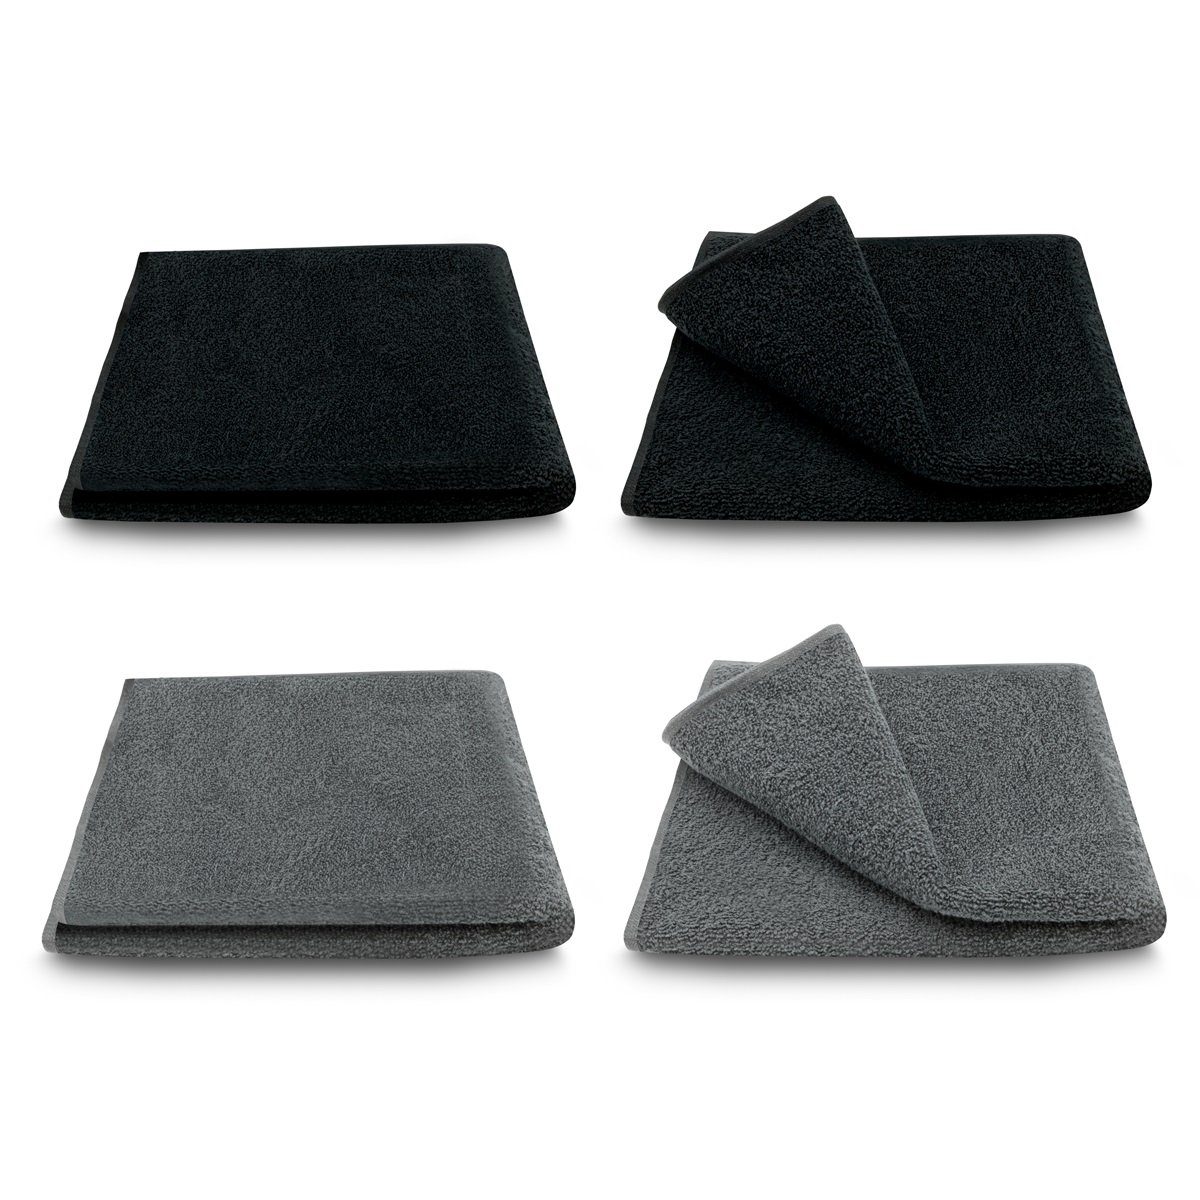 ARLI Handtuch Set Handtuch 100% Baumwolle 4 Handtücher 2 x anthrazit + 2 schwarz Set Serie aus hochwertigem Rohstoff Frottier klassischer Design elegant schlicht modern praktisch mit Handtuchaufhänger 4 Stück, (4-tlg) | Handtuch-Sets